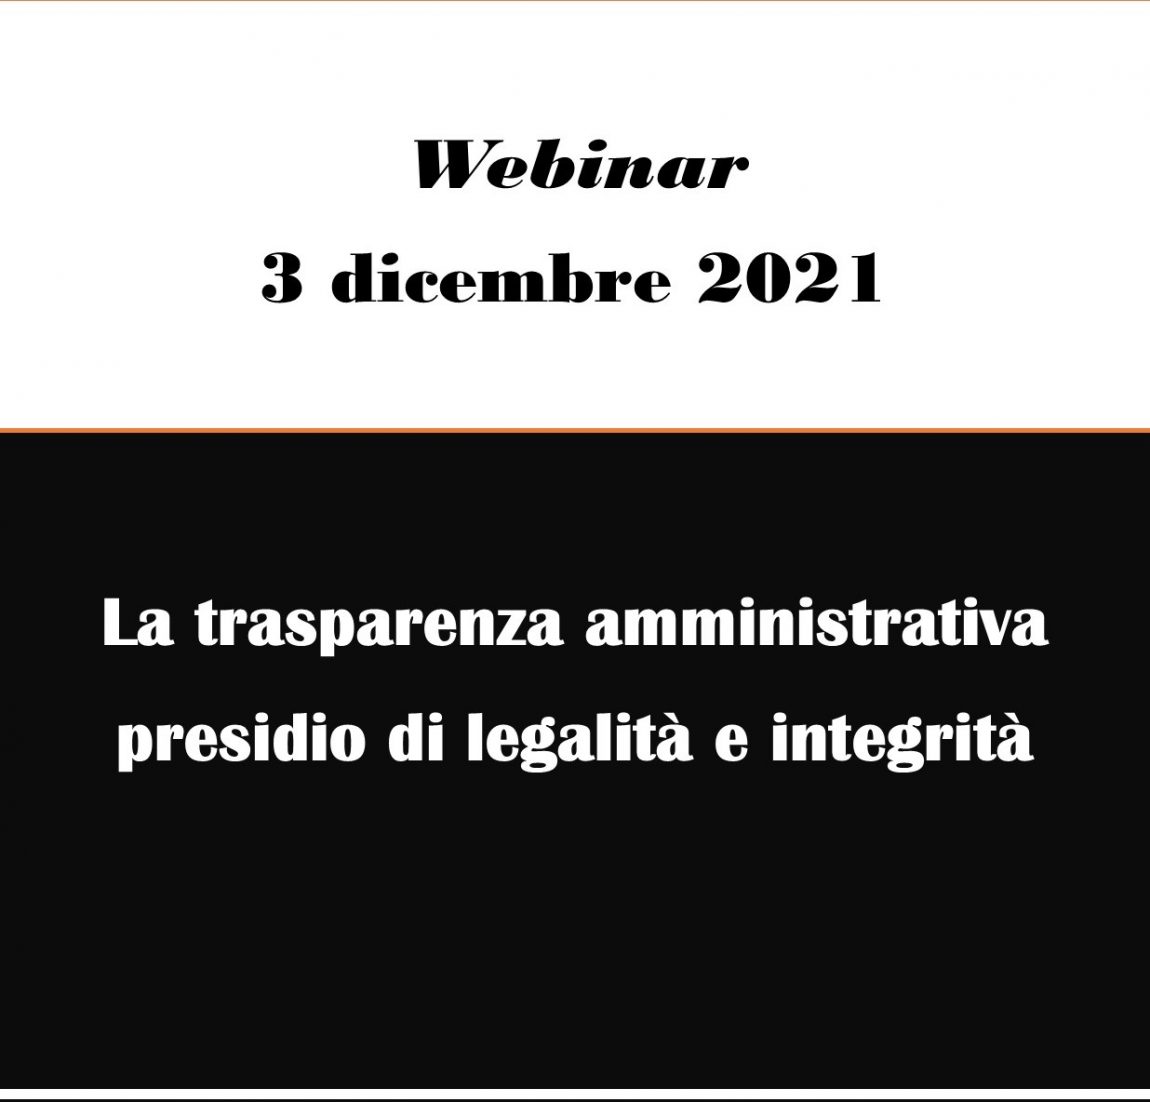 Webinar – La trasparenza amministrativa presidio di legalità e integrità